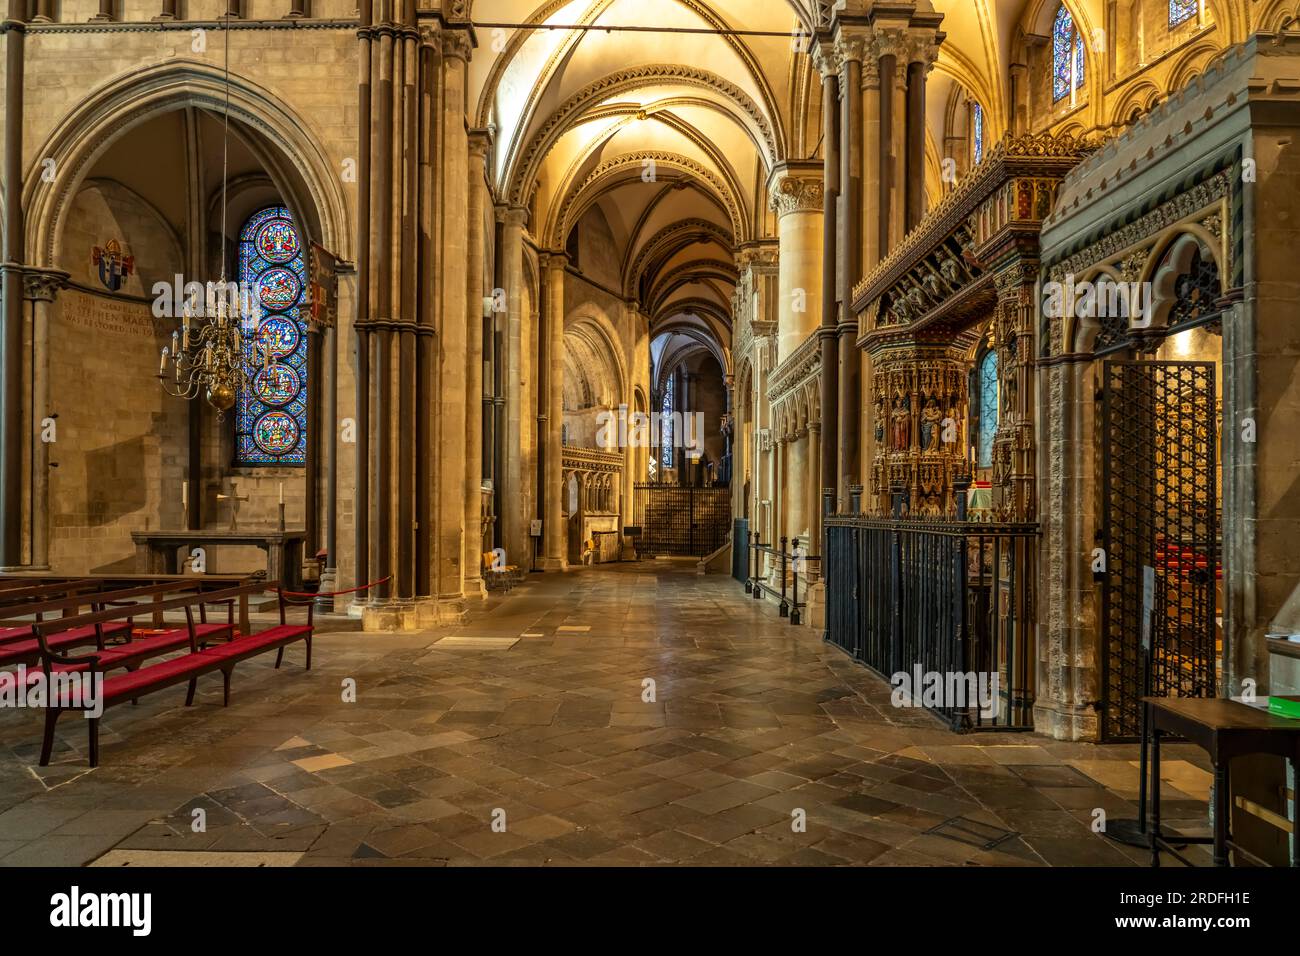 Innenraum der Kathedrale von Canterbury, England, Großbritannien, Europa | Canterbury Cathedral interior, England, Vereinigtes Königreich Großbritannien, Stockfoto